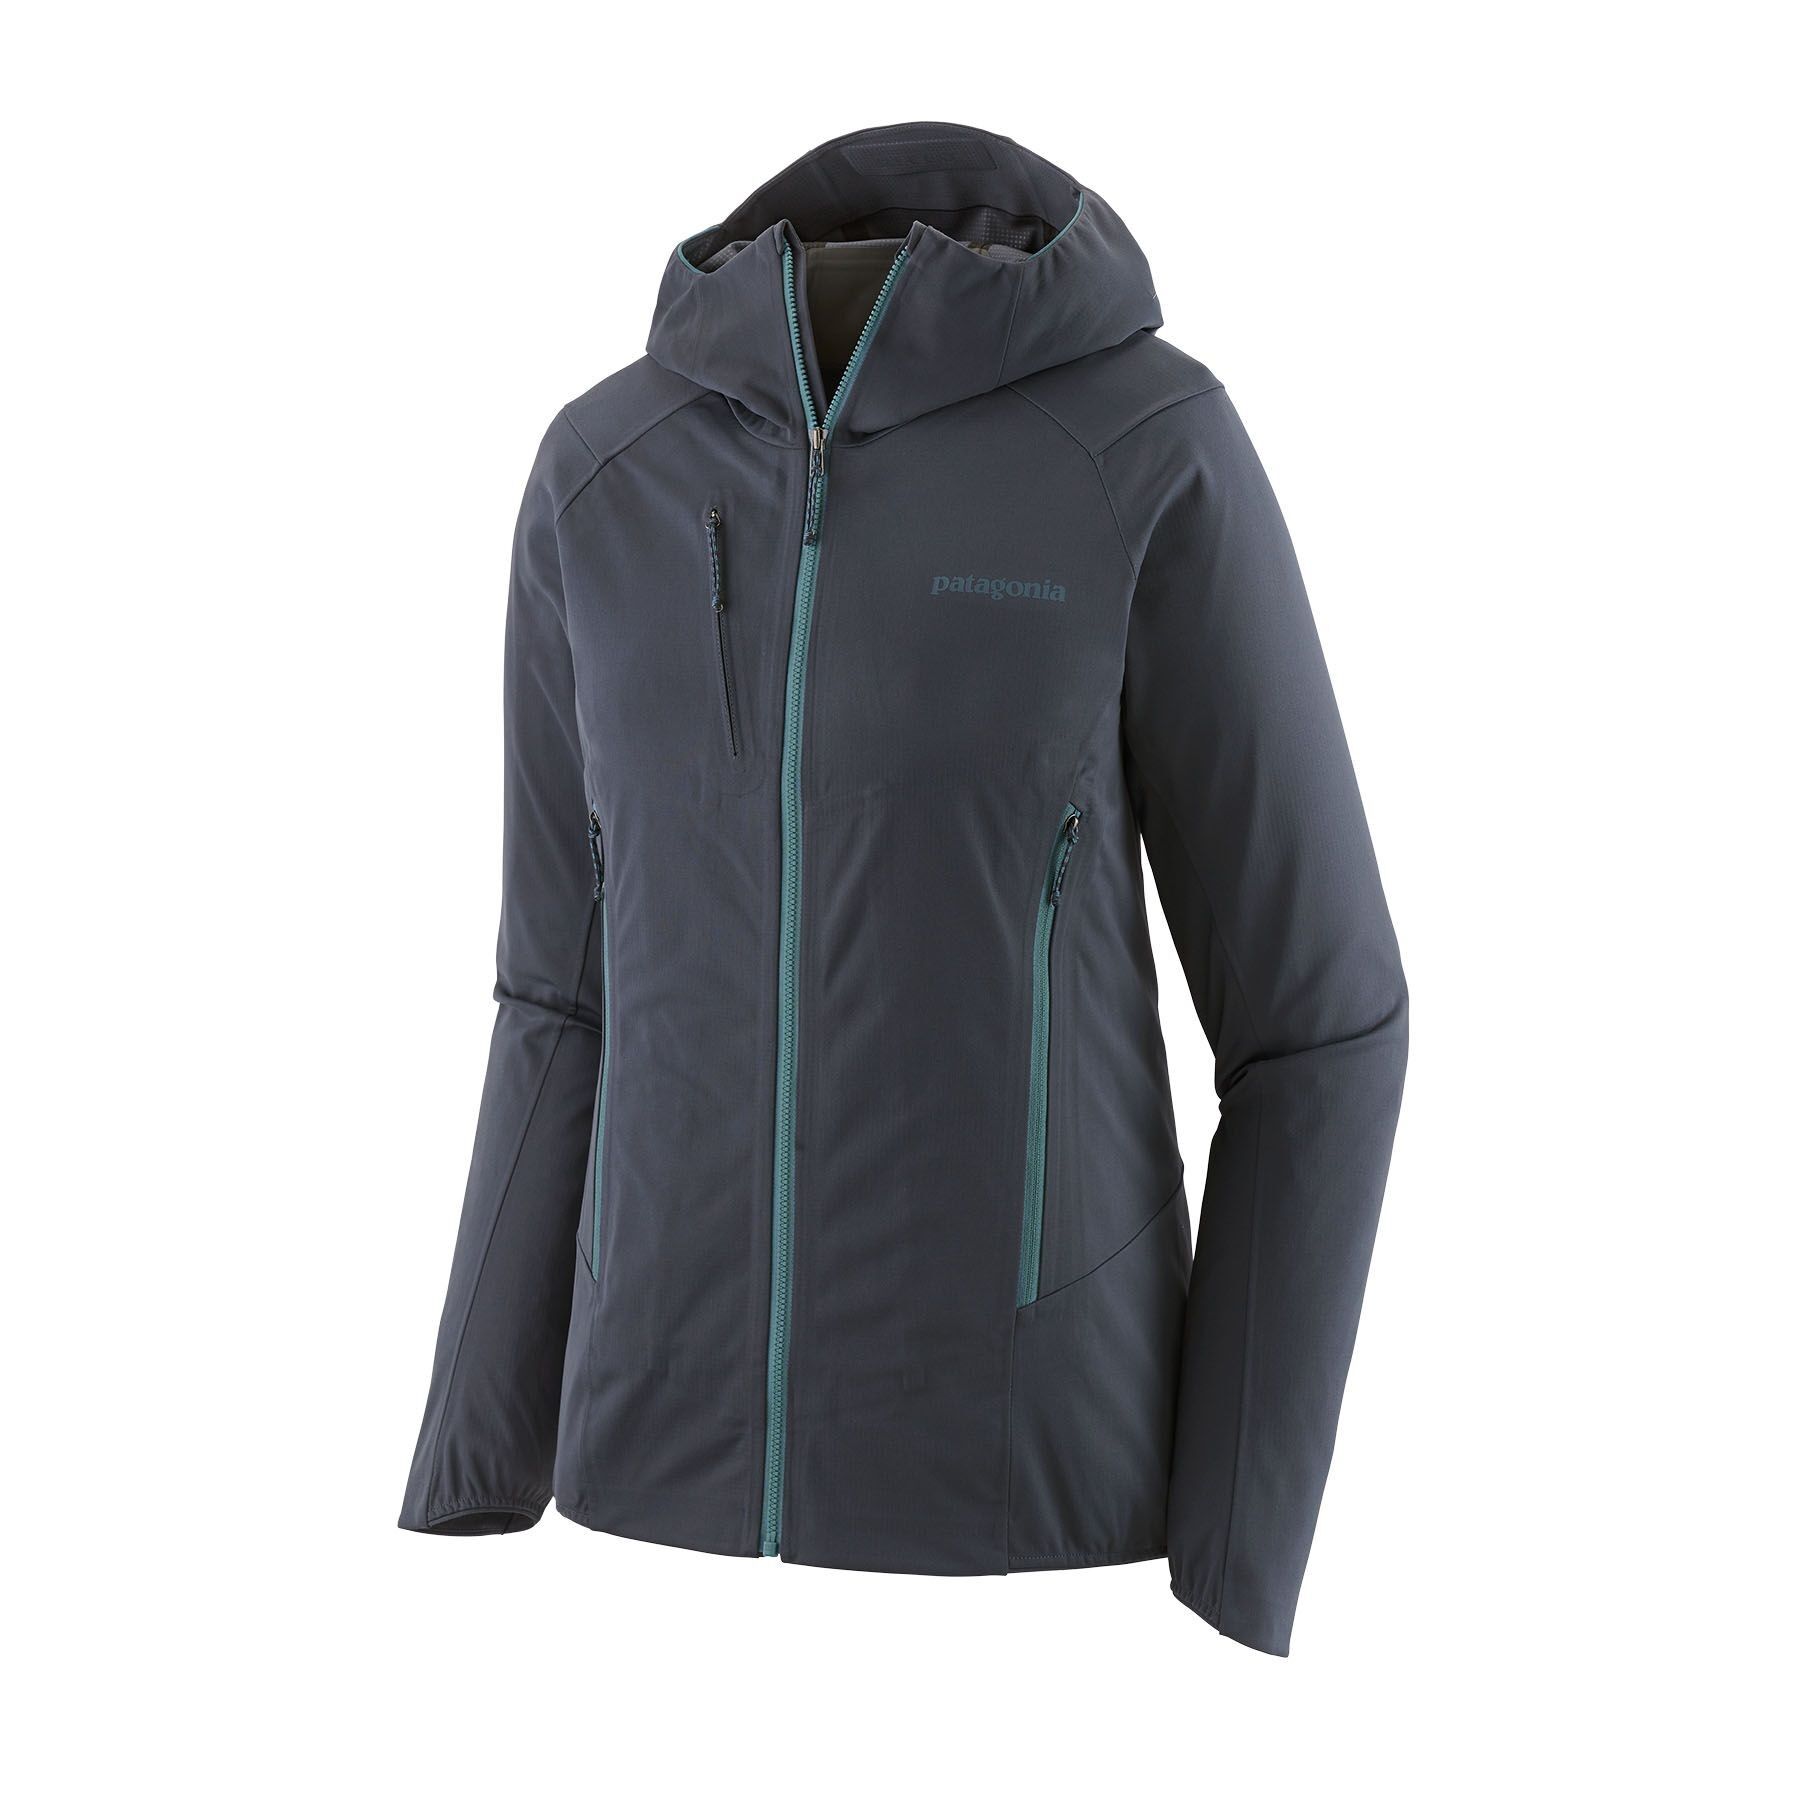 Patagonia Upstride Jacket - Ski jacket - Women's